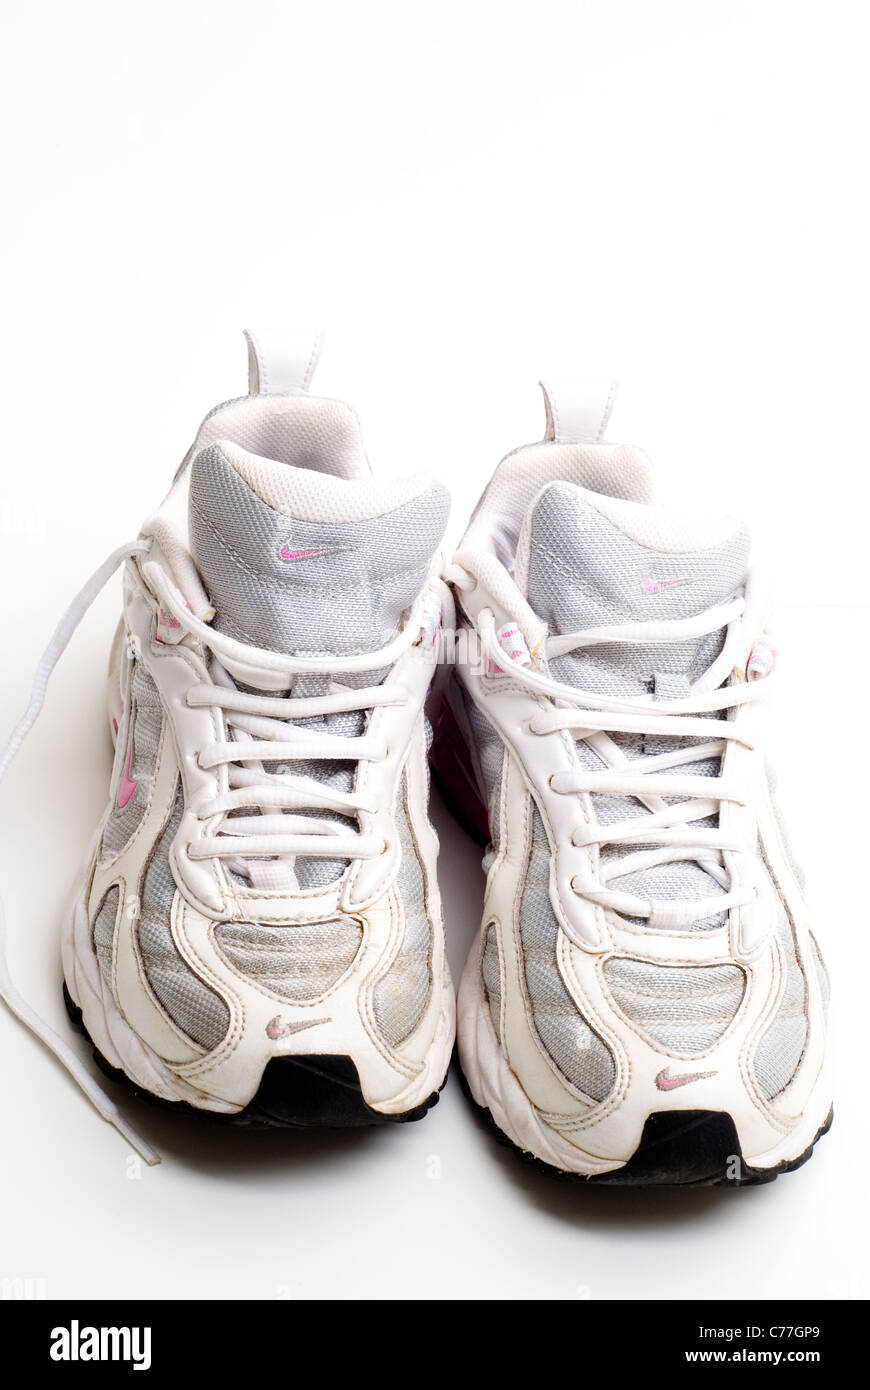 Paar wird von alten Nike Running Schuhe getragen Stockfotografie - Alamy